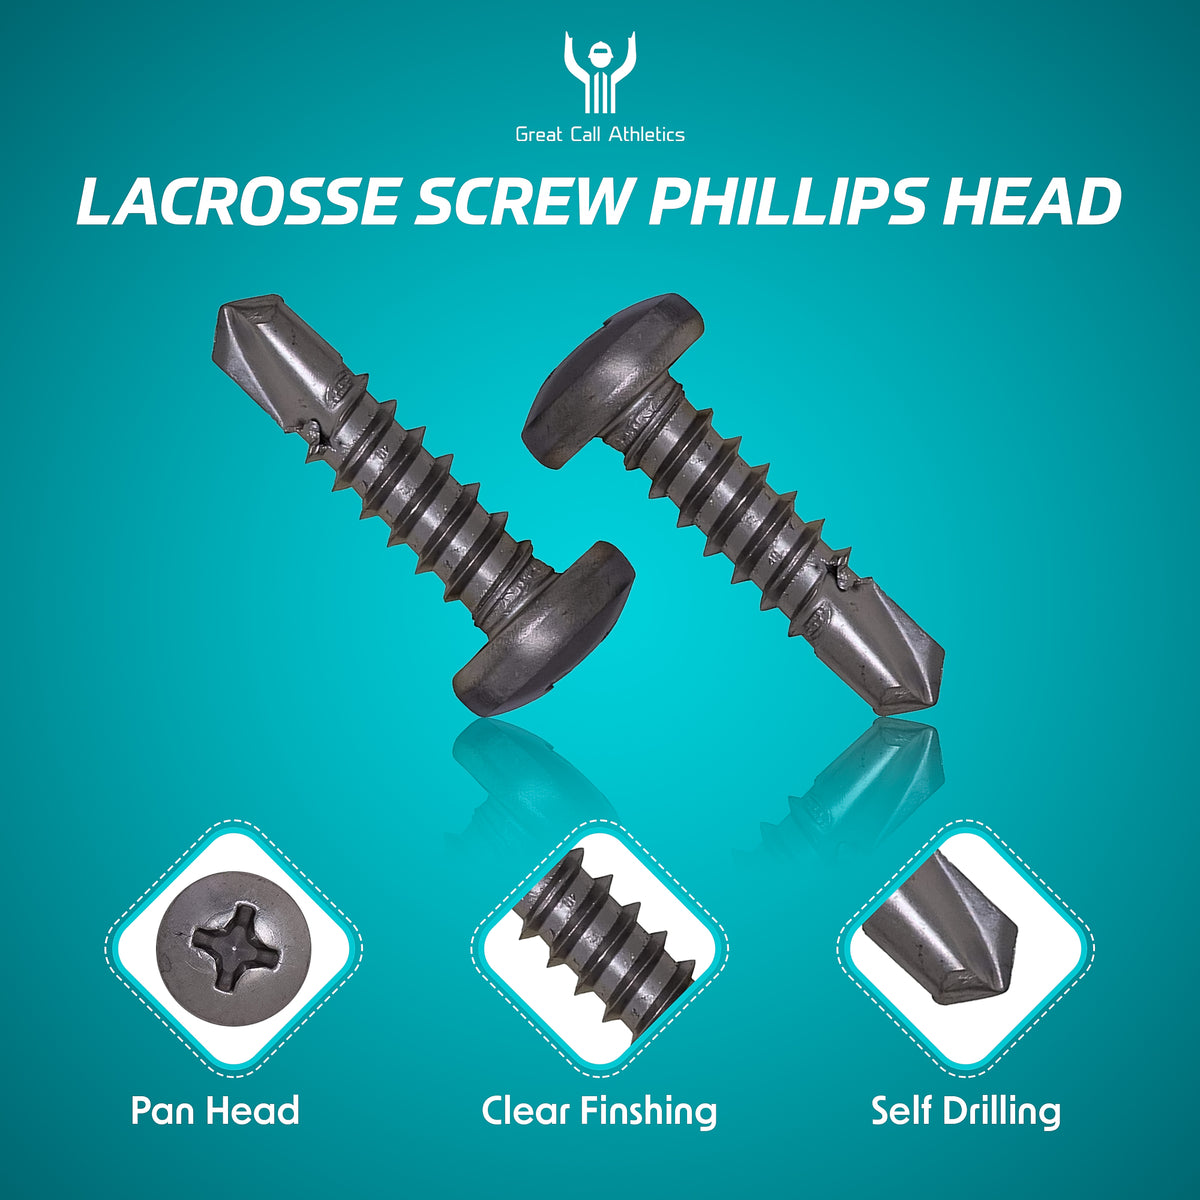 Tornillos de lacrosse | Paquete de 30 cabezales Philips autorroscantes de acero inoxidable que se adaptan a todos los cabezales Lax